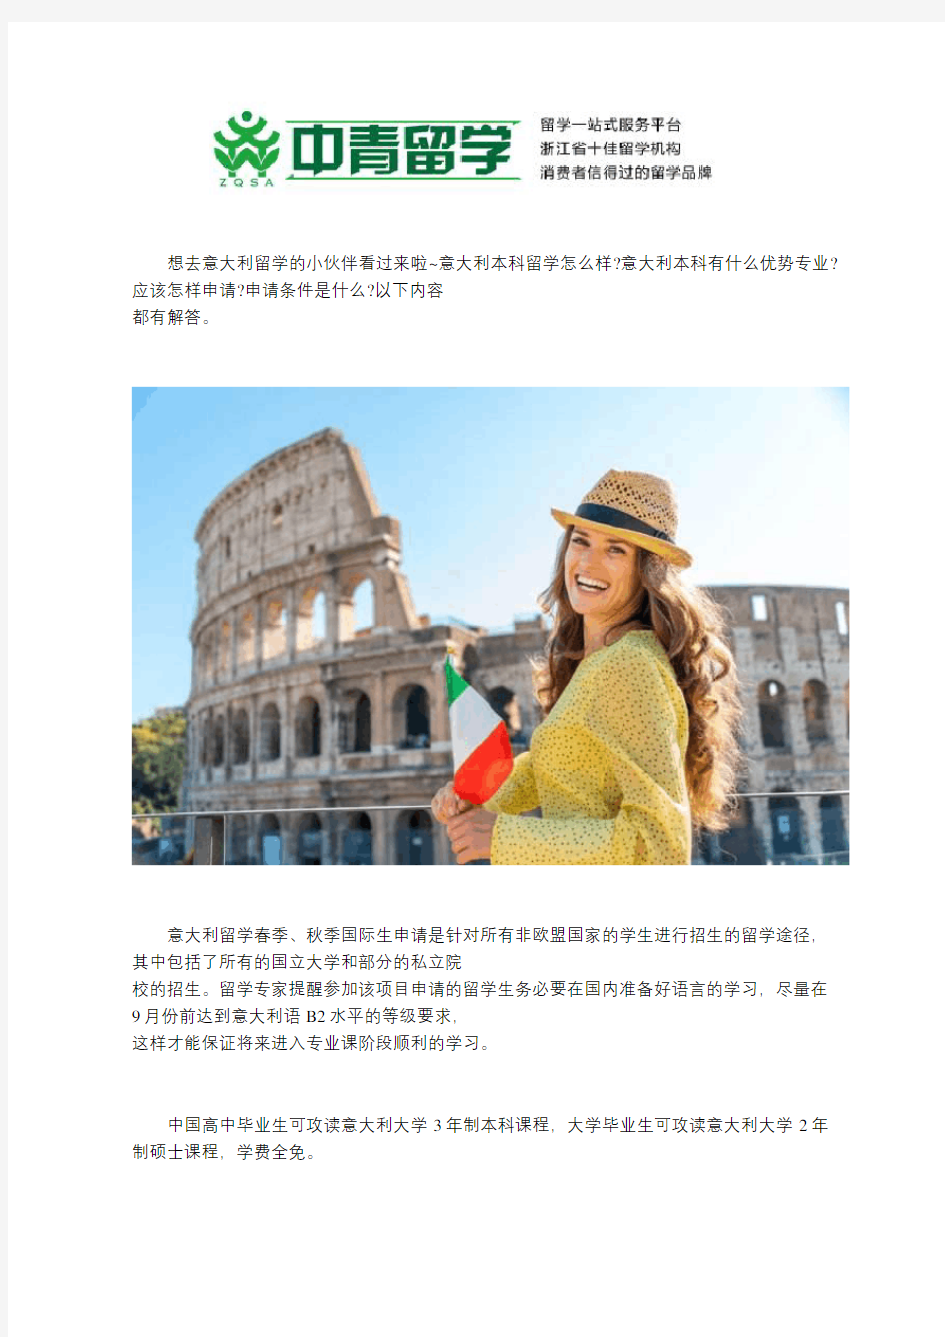 意大利本科留学怎么样,优势专业有哪些,申请条件是什么